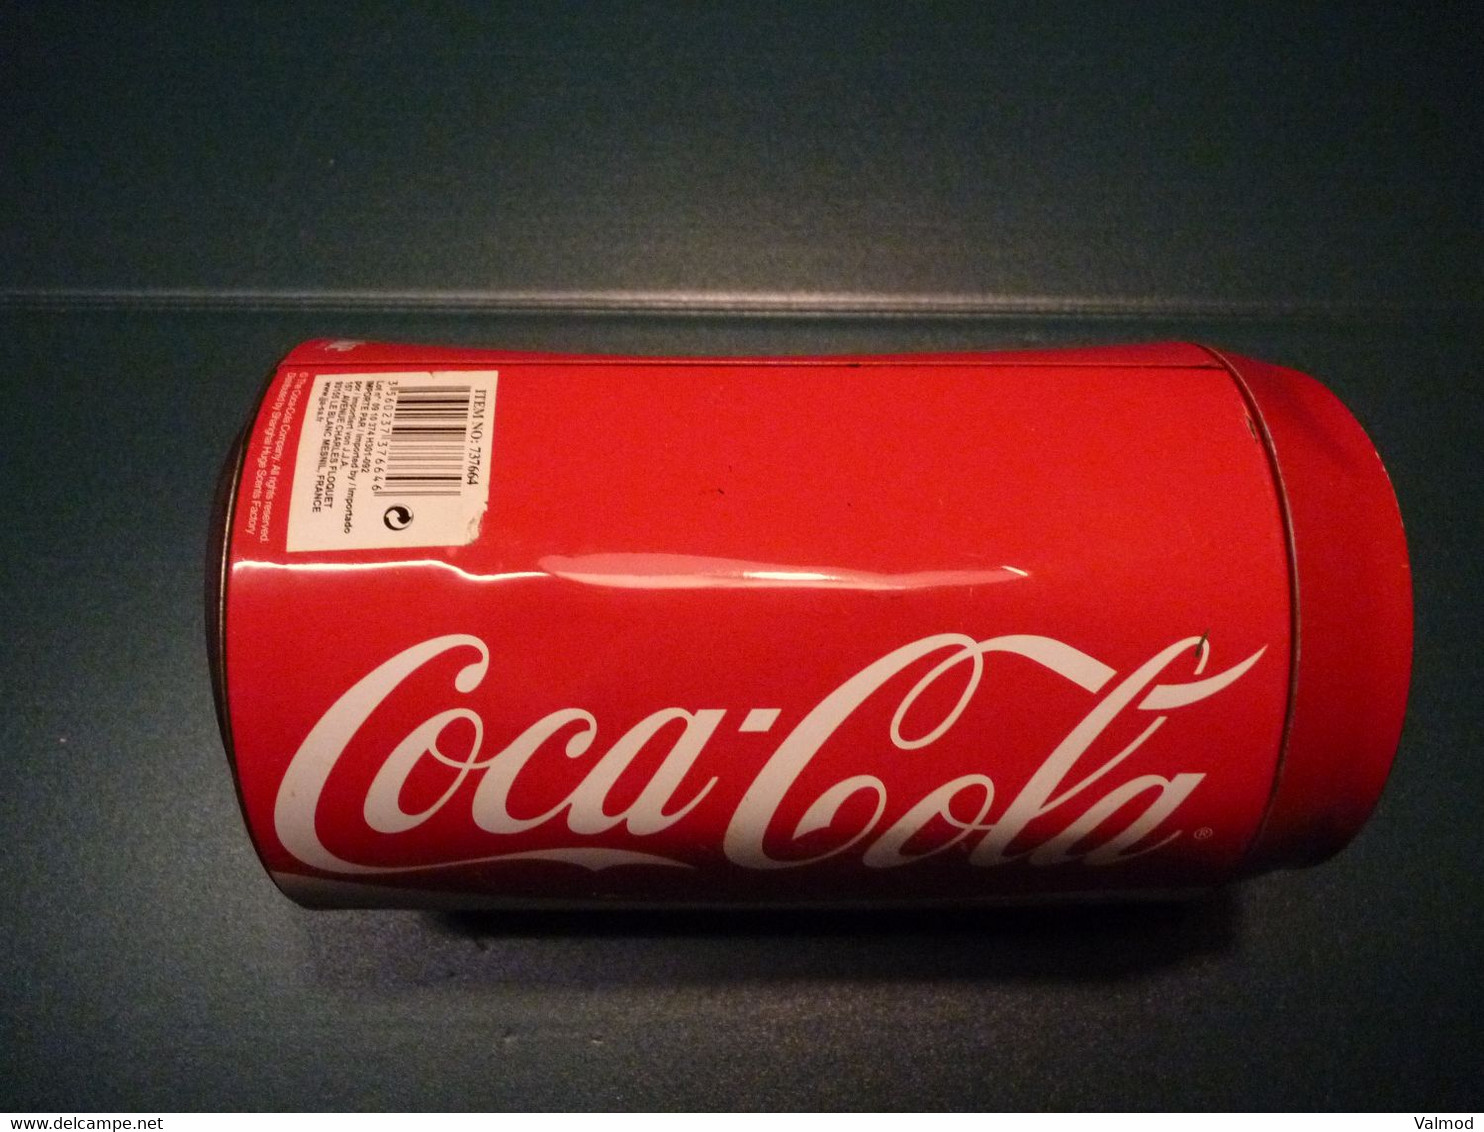 Tirelire Coca Cola en forme de très grance Cannette - Voir Détails sur Photos - Hauteur 20 cm Diamète 11 cm environ.